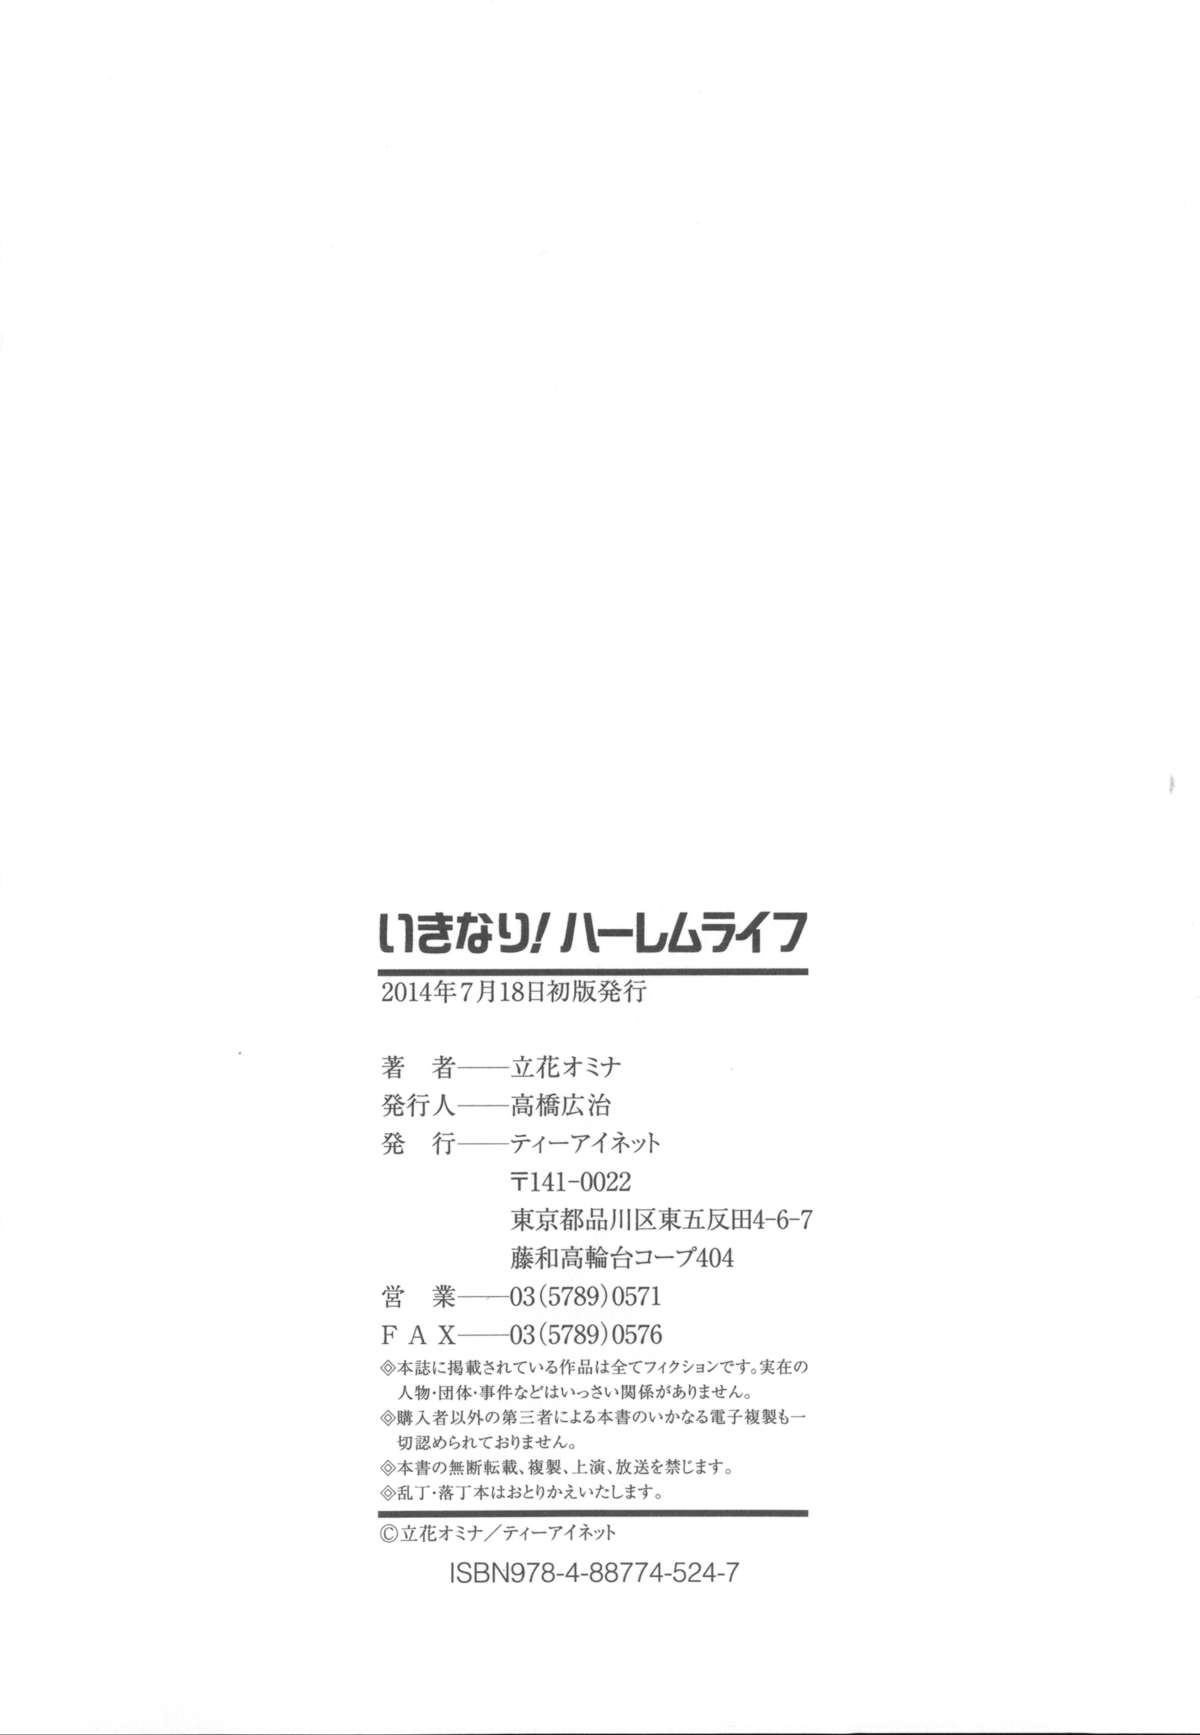 [立花オミナ] いきなり!ハーレムライフ + メッセージペーパー, 複製原画